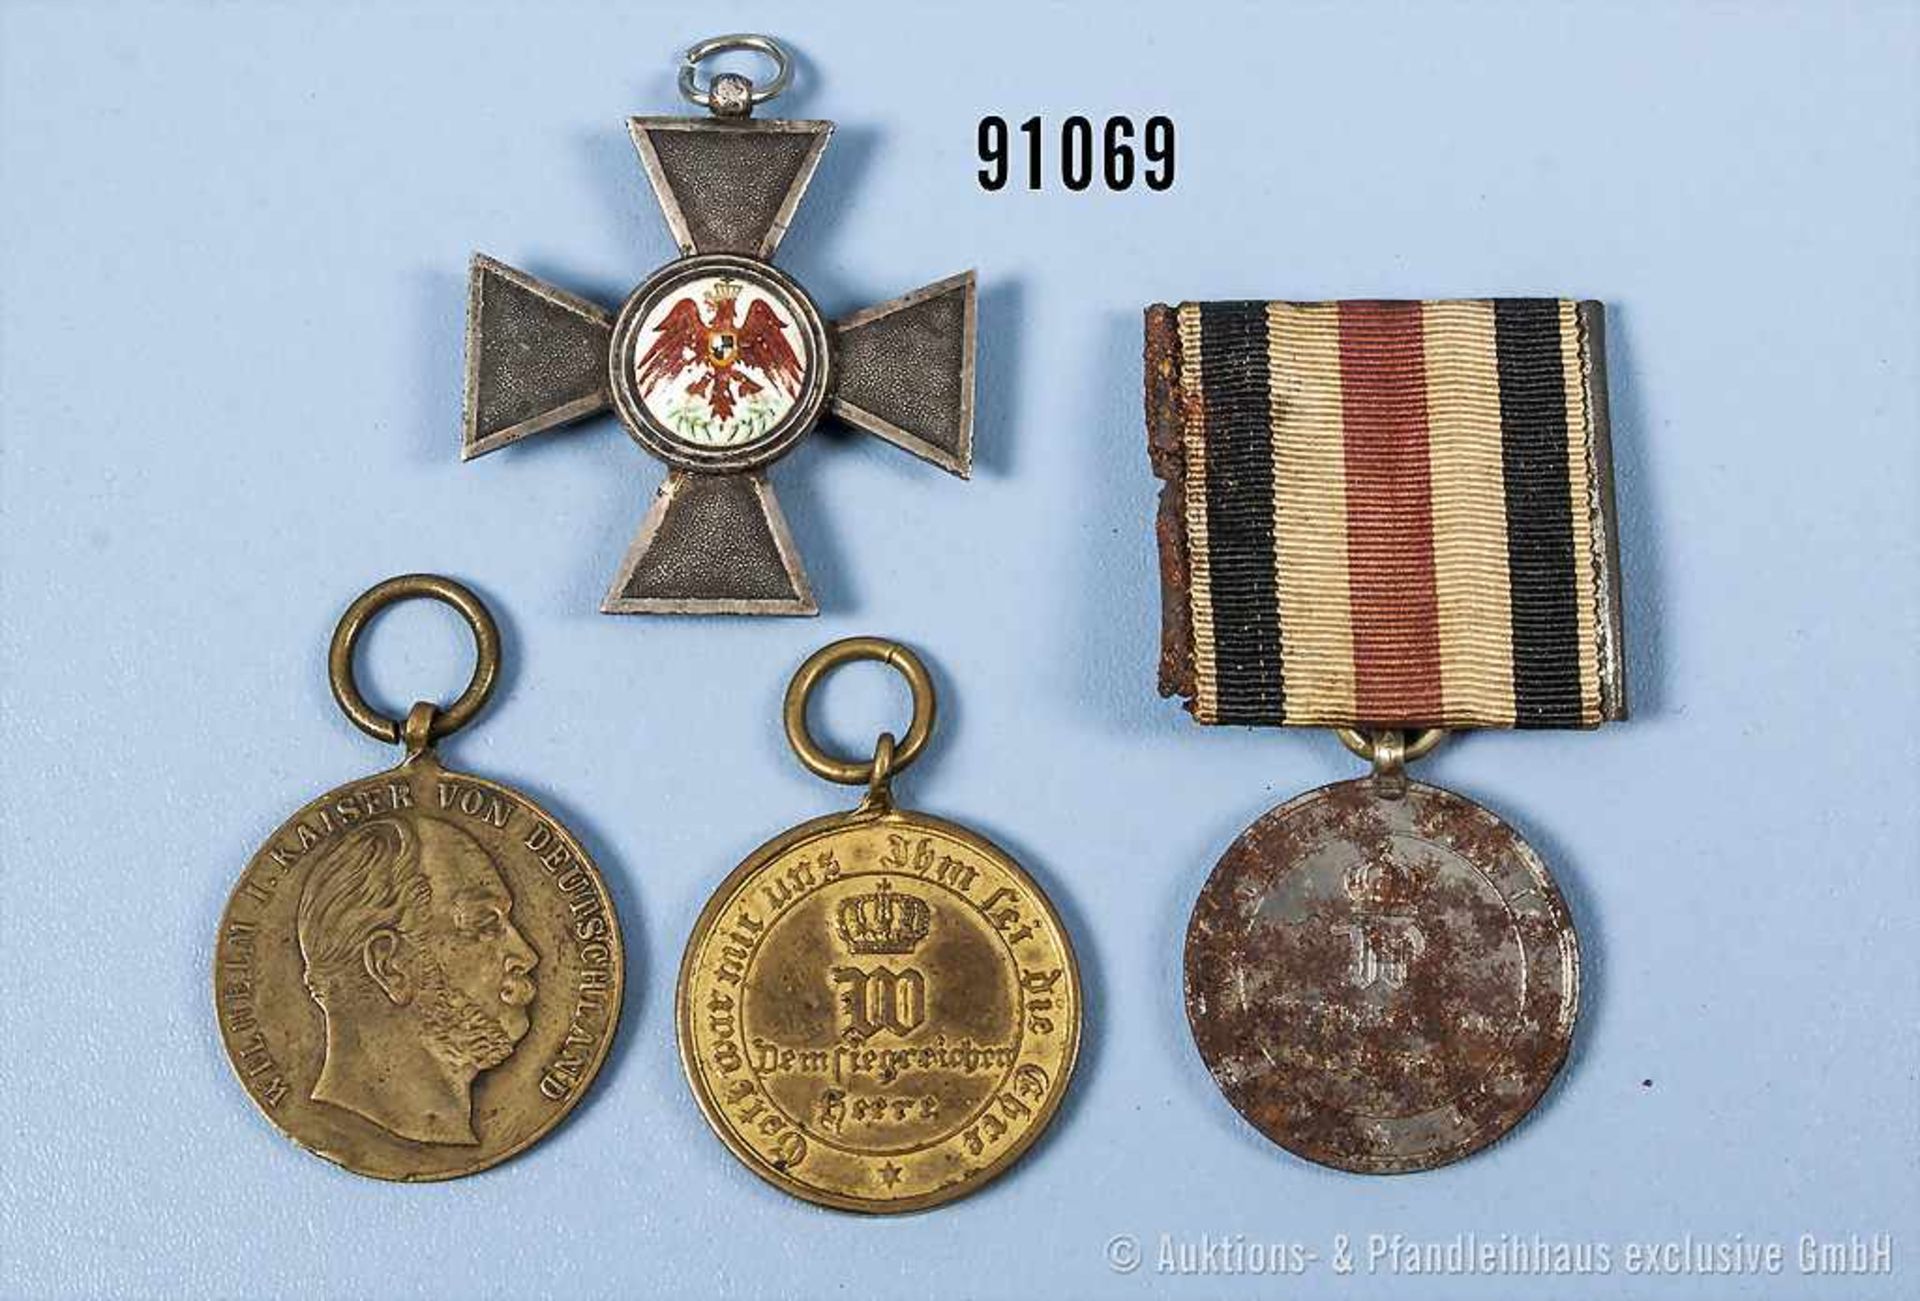 Konv. Preußen Roter Adlerorden 4. Klasse, KDM 1870 aus Stahl, korrodiert, an der Einzelspange und